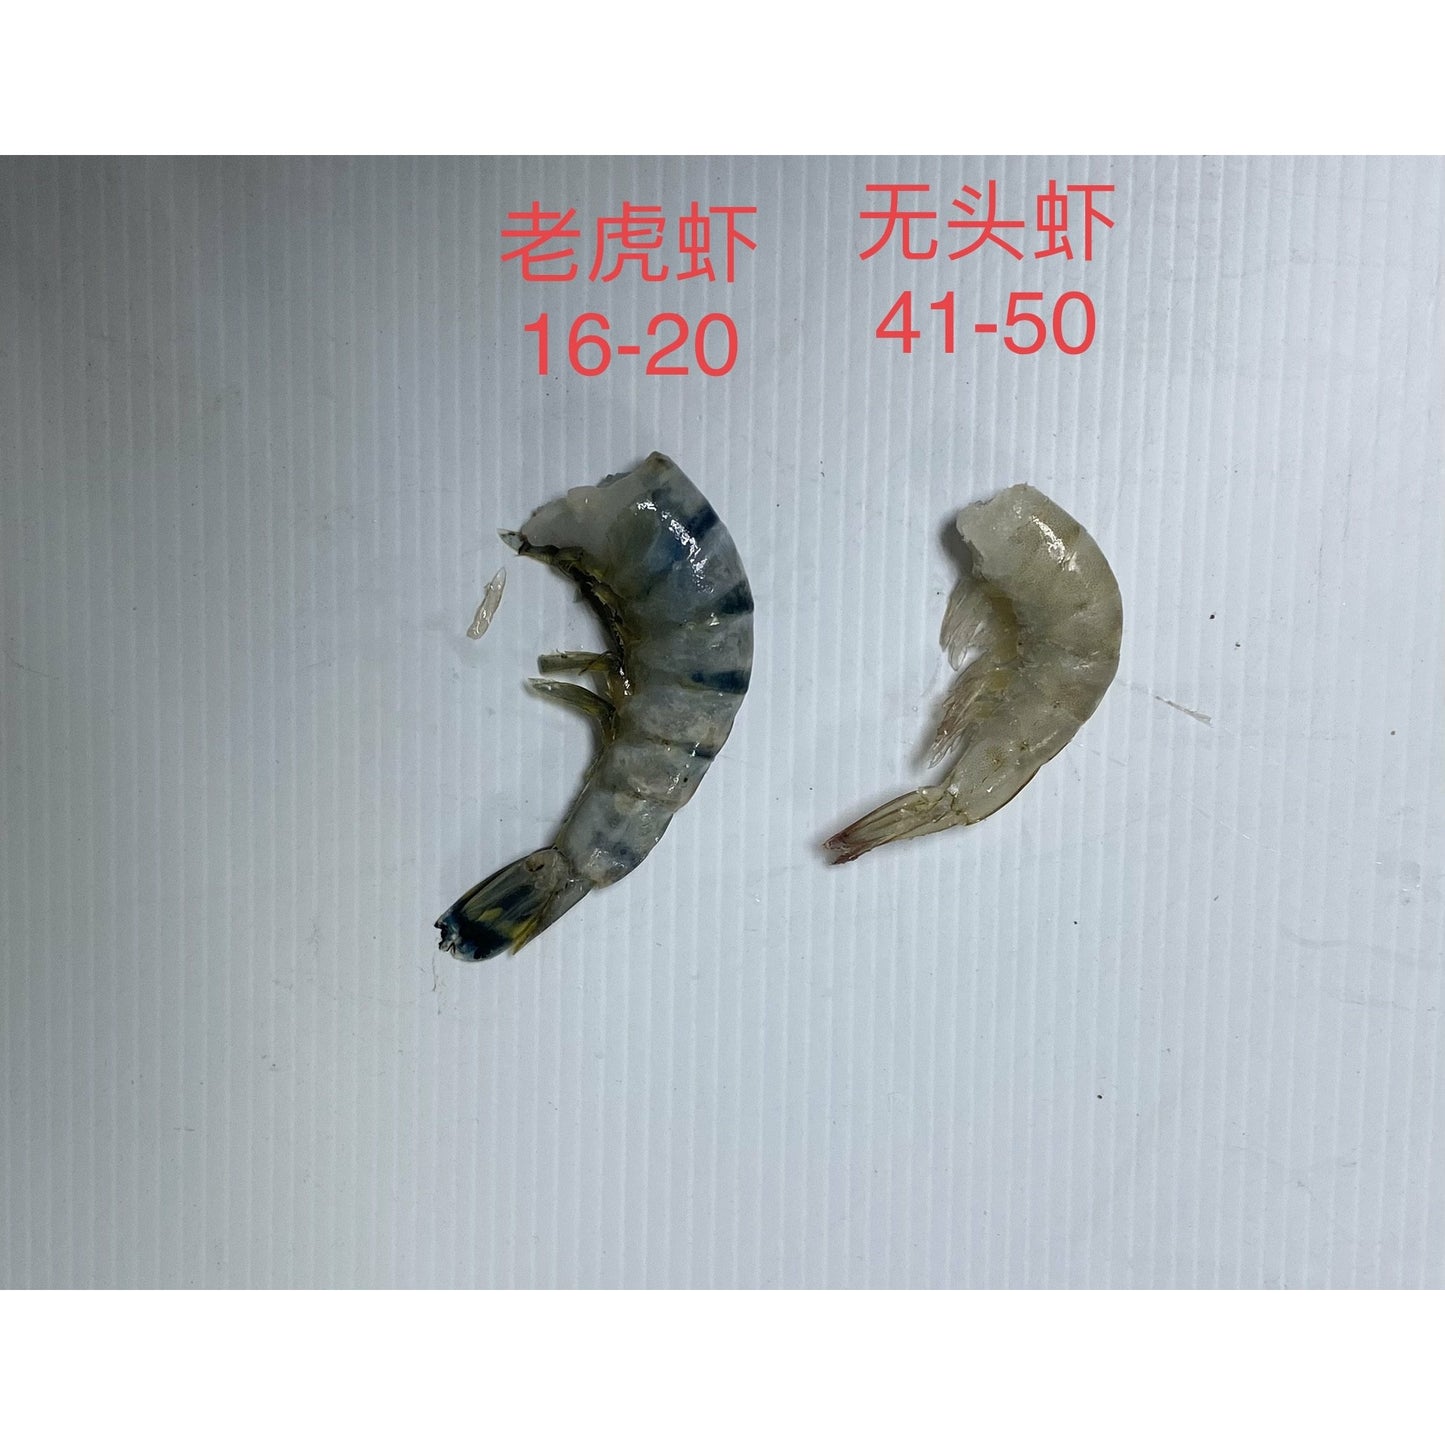 16-20 大老虎蝦  (0.8-1 lbs)